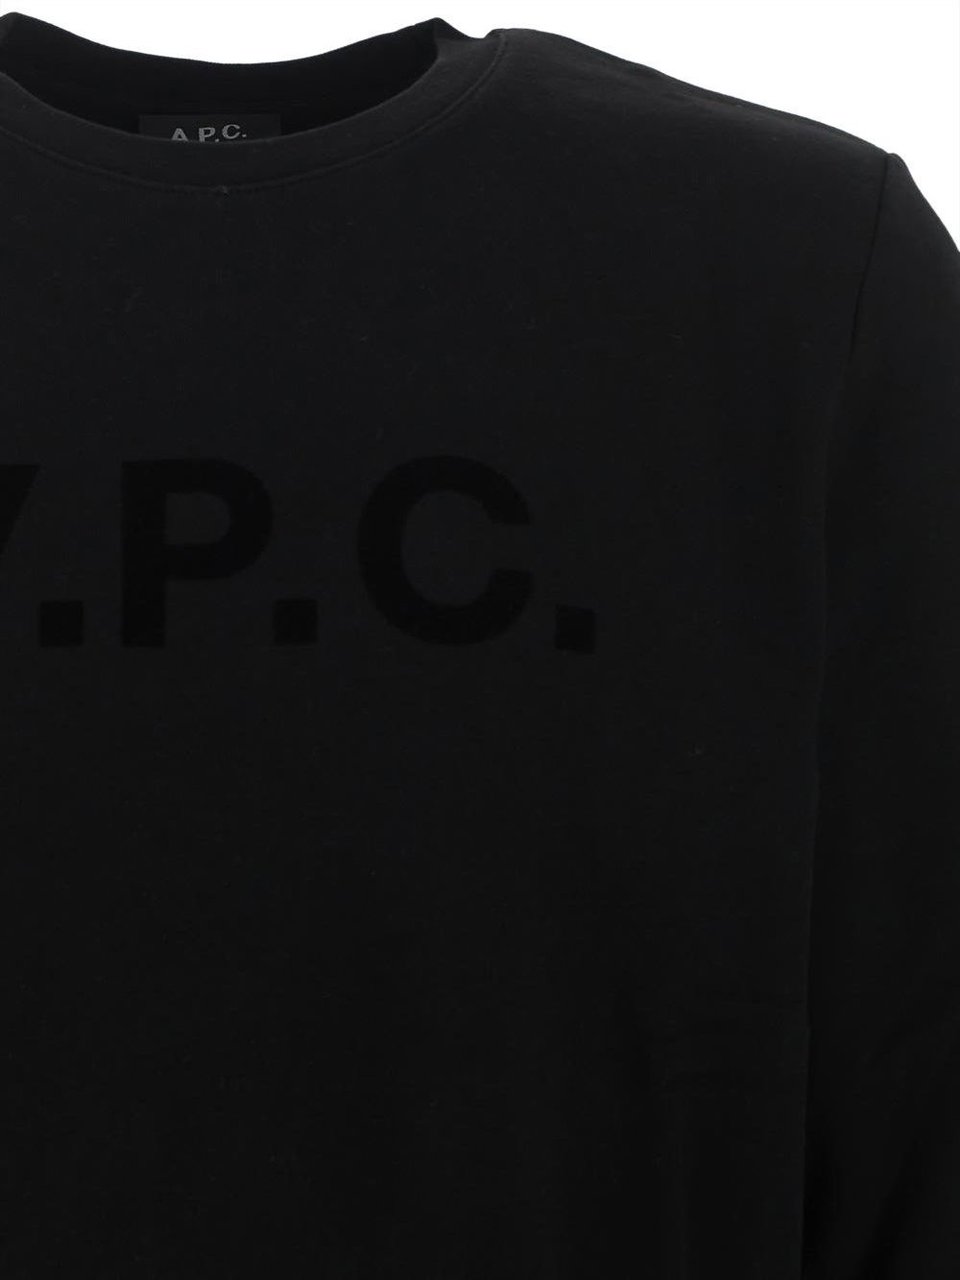 A.P.C. VPC Swaetshirt Zwart